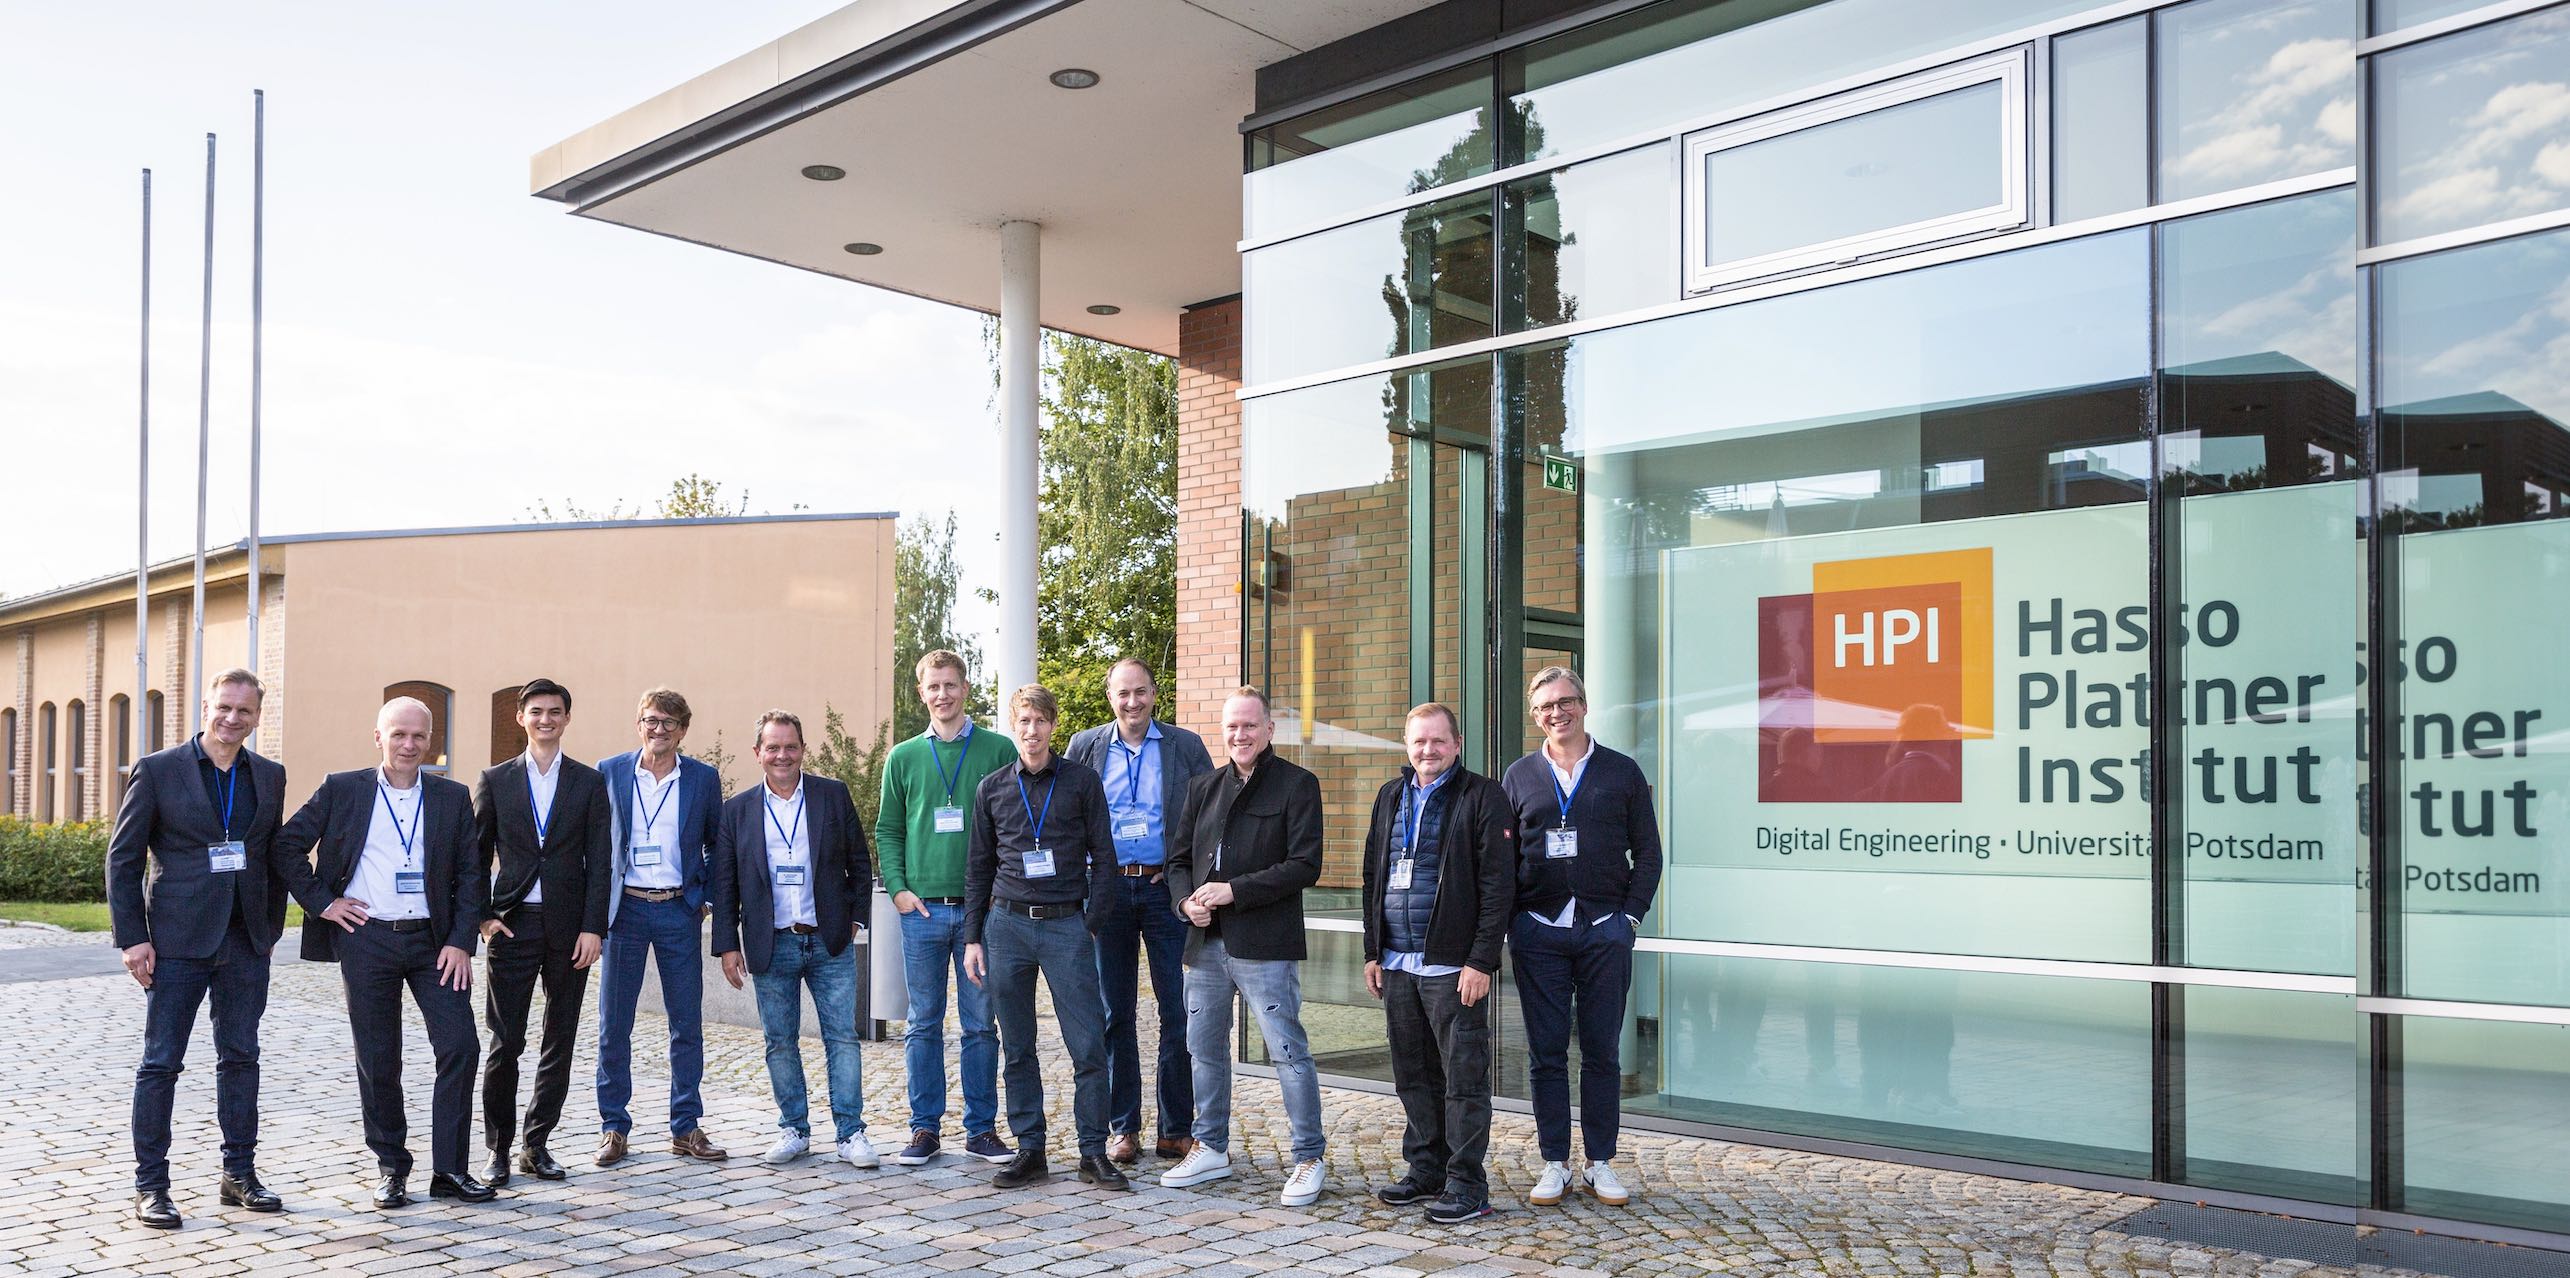 Automotive Speakers at HPI Marc Hildebrandt